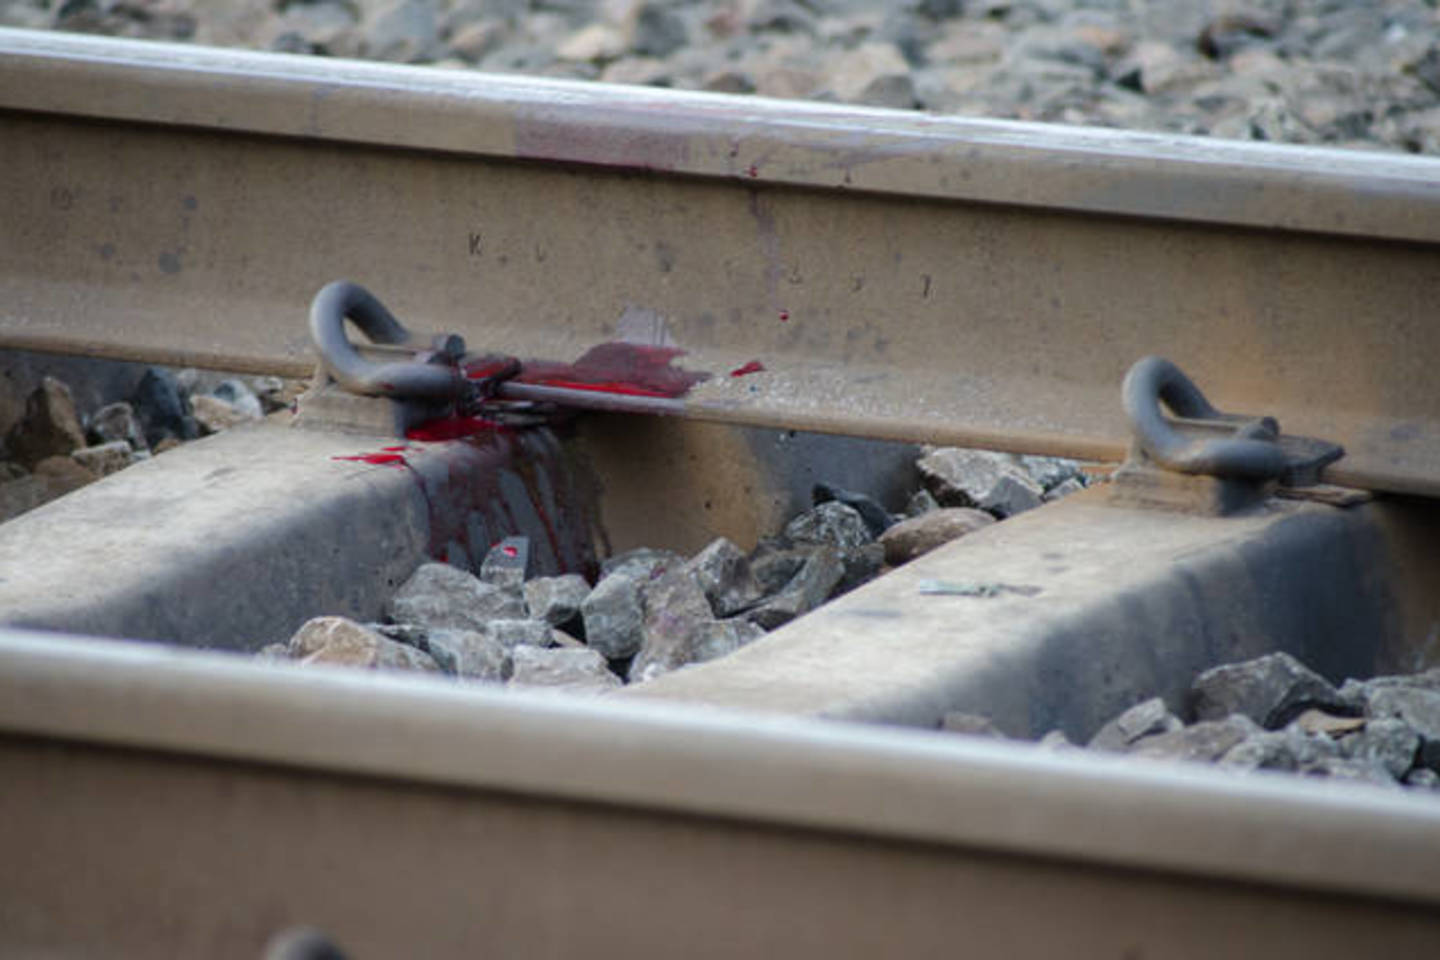 Vilkaviškio rajone traukinys partrenkė ir mirtinai traumavo ant bėgių buvusį vyrą.<br>D.Umbraso asociatyvi nuotr.